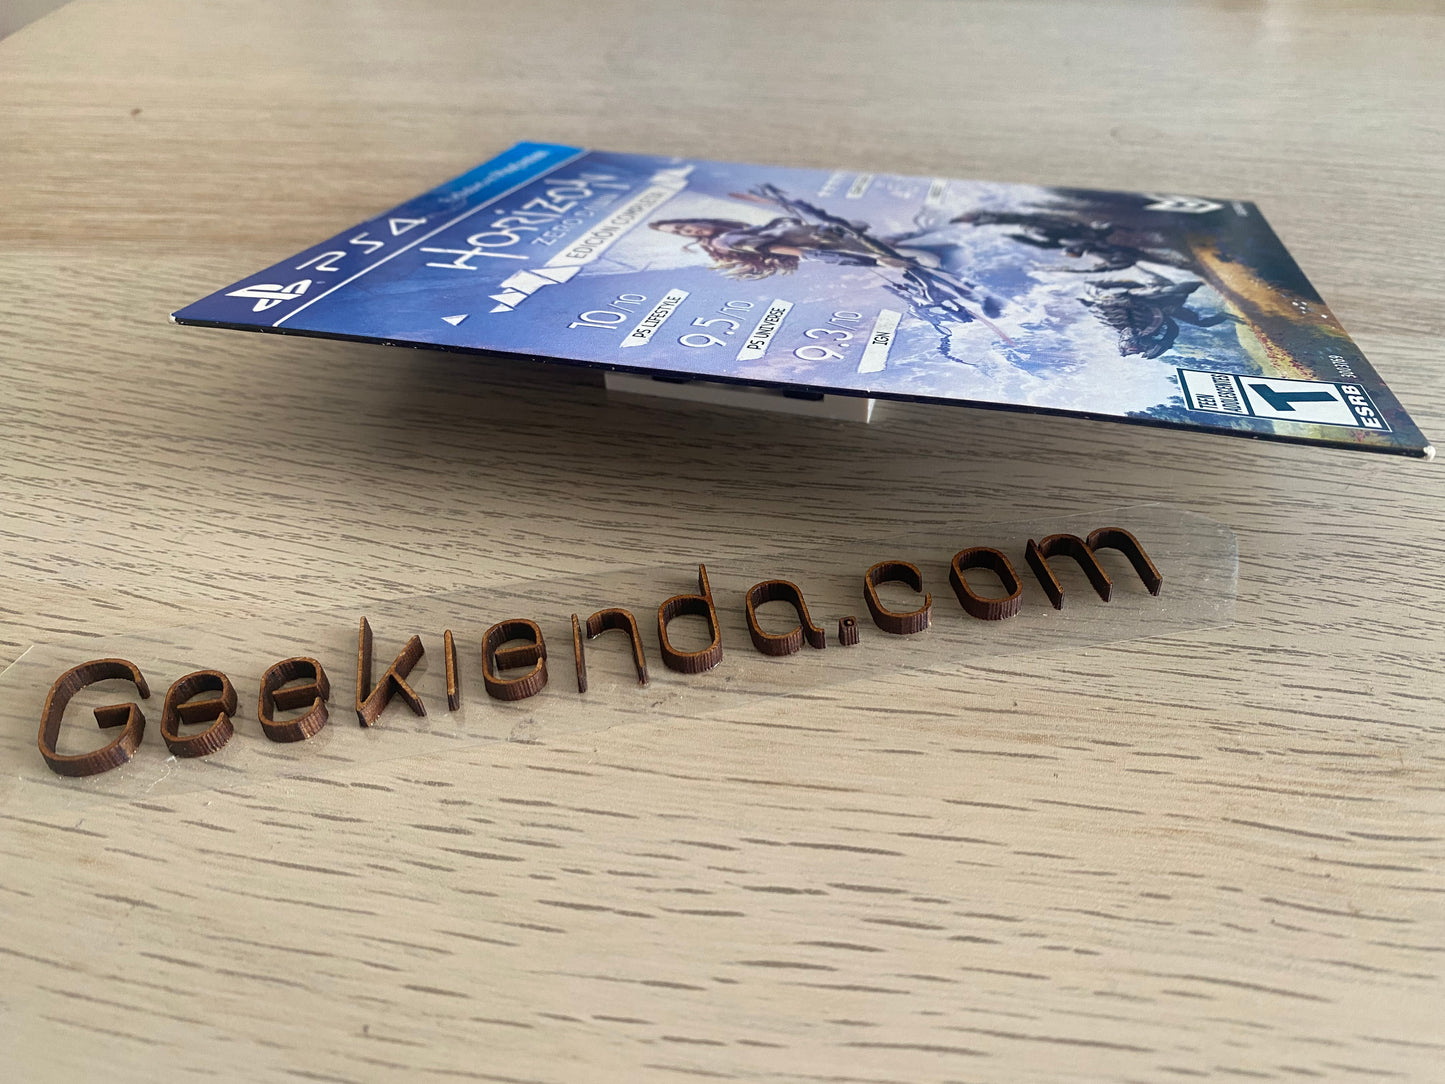 .Geekienda - Videojuegos juego Horizon zero dawn edición Copleta - PlayStation 4 ps4